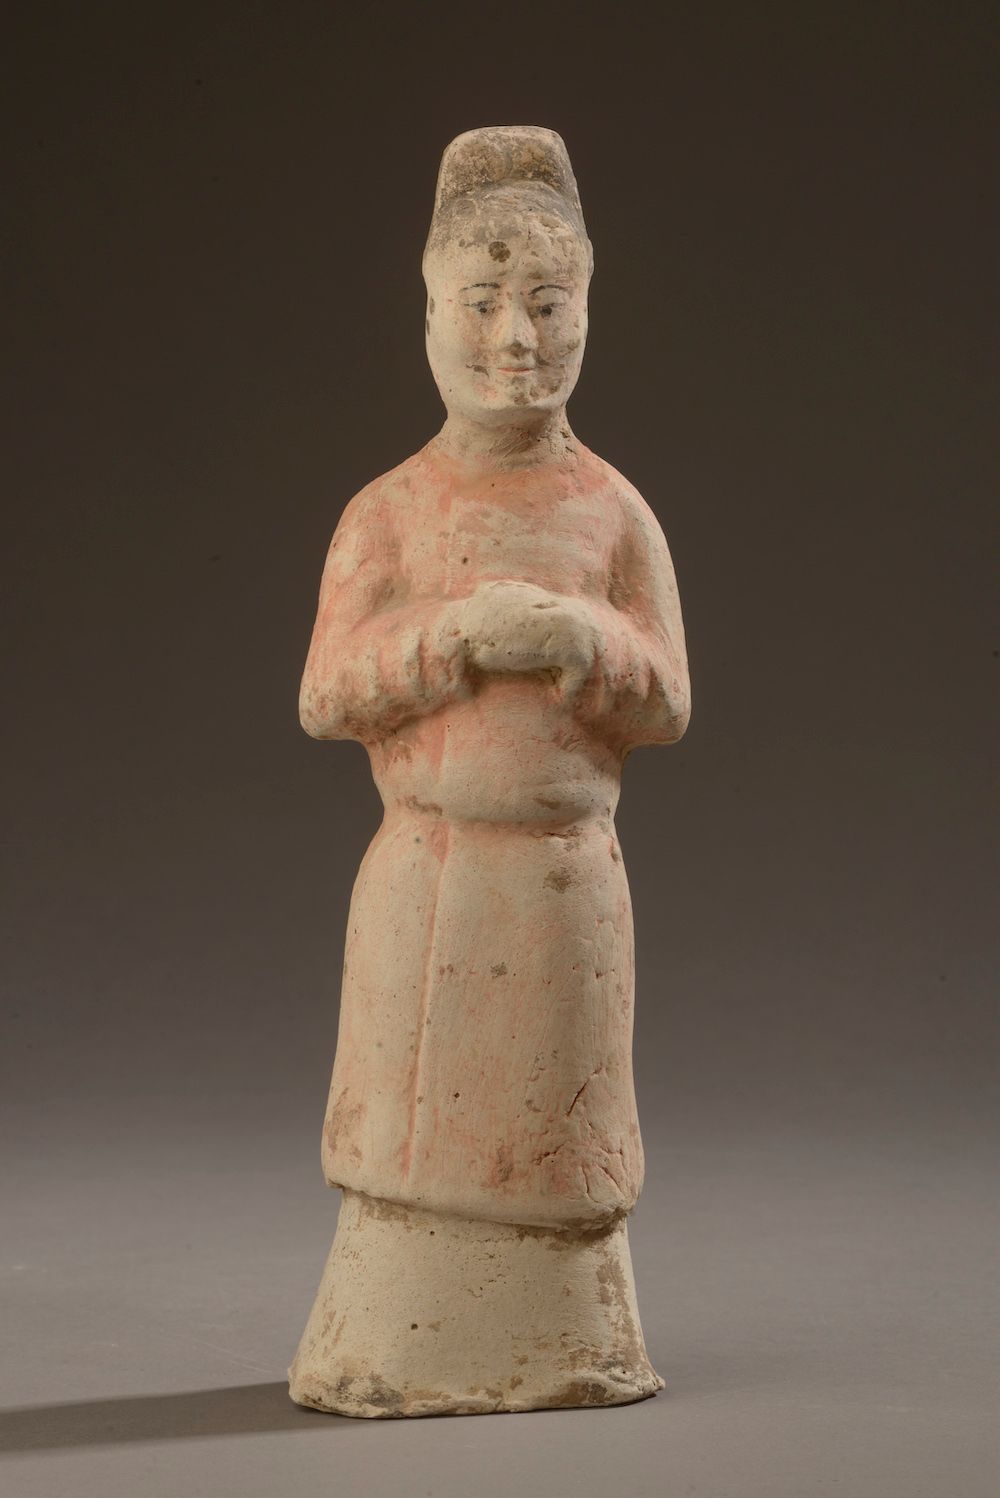 Null 中国--唐朝时期（618-906）。

陶器中双手合十的站立侍女雕像，有黑色、红色和白色颜料的痕迹（头部已修复？）

附有 "亚洲陶瓷艺术协会、澳门考&hellip;